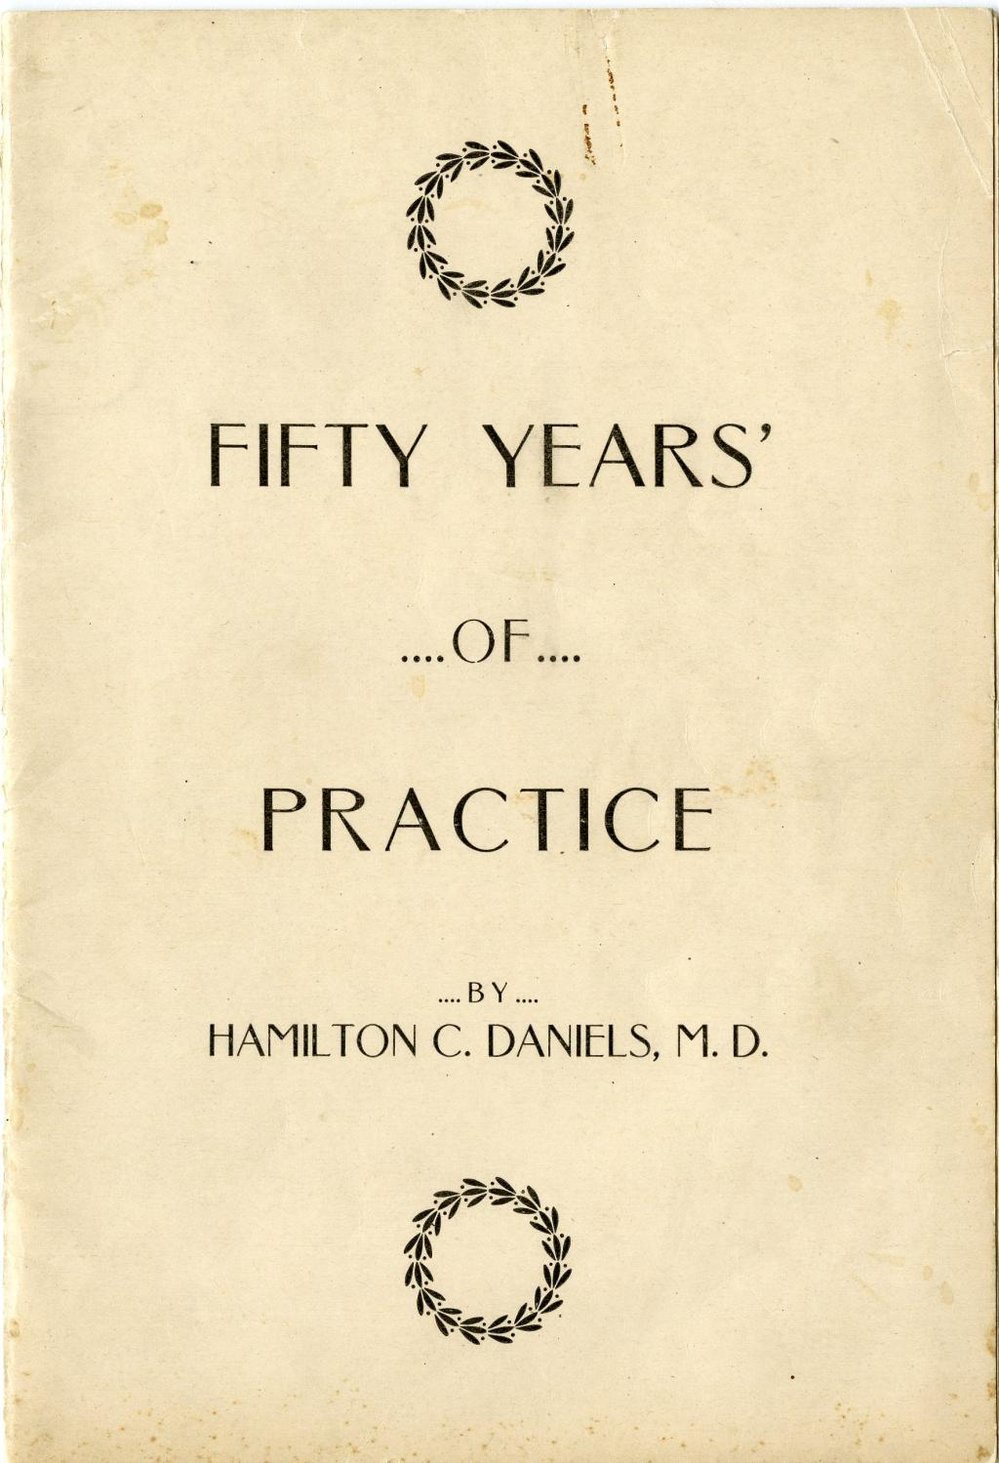 Photograph of Dr. Daniel's medicine recipes book